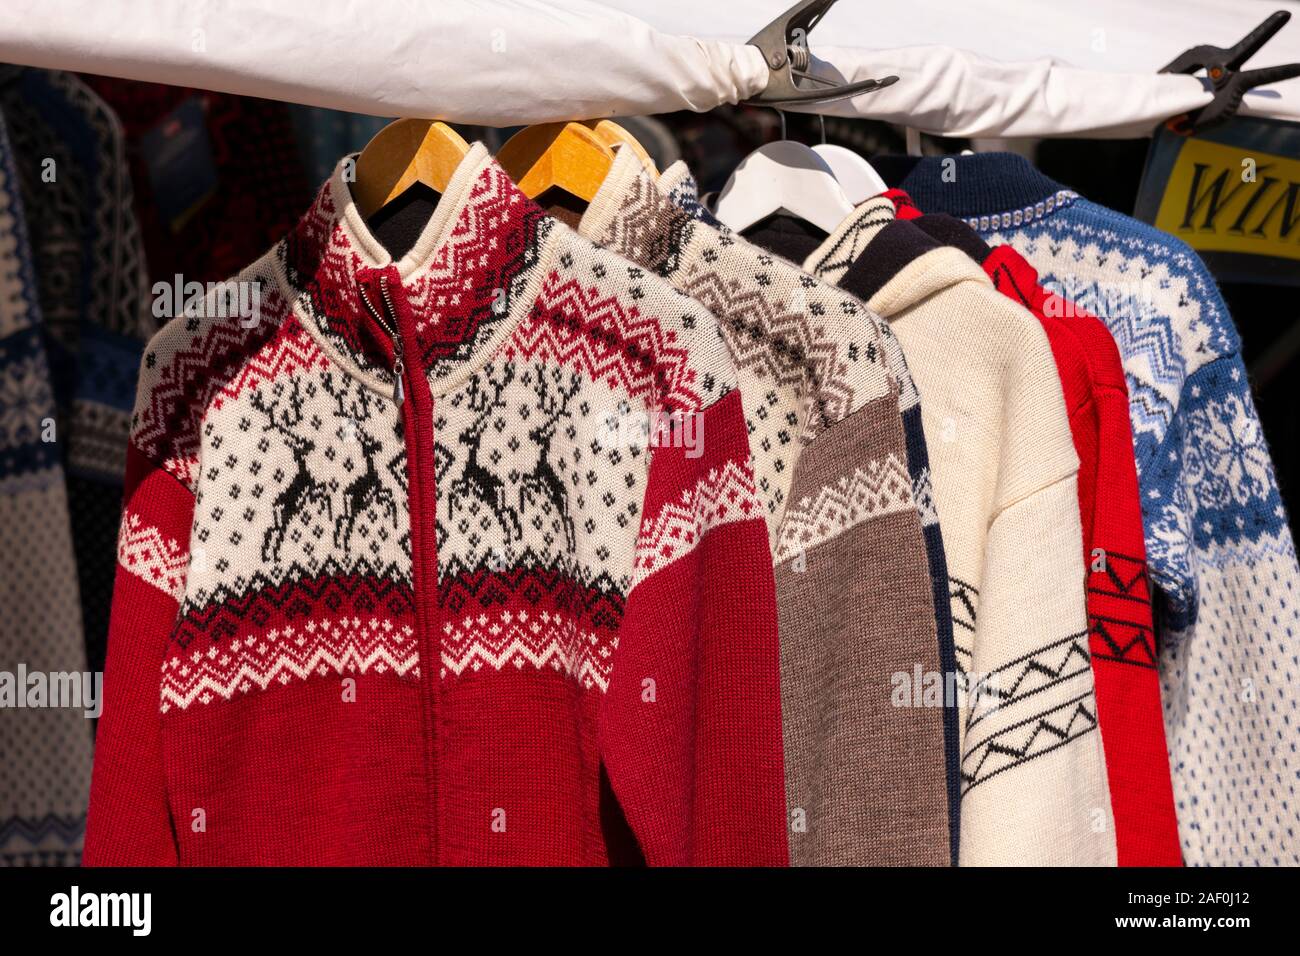 TROMSØ, NORWEGEN - Norwegische wolle Stricken Pullover für Verkauf am Markt  im Freien Stockfotografie - Alamy